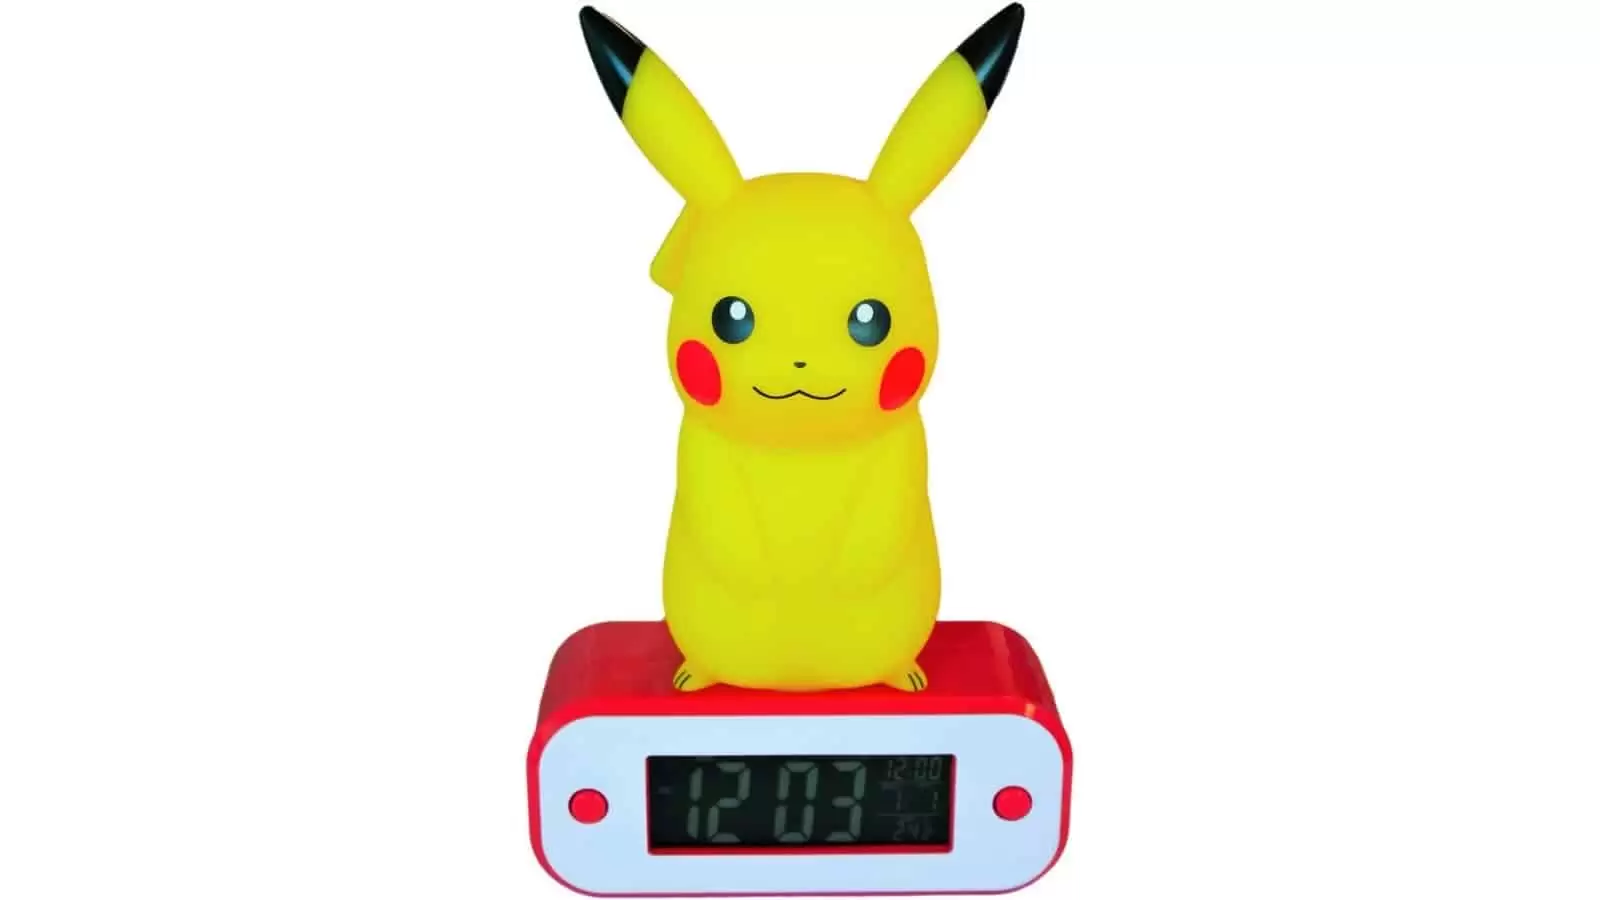 שעון אלקטרוני Nacon teknofun pikachu alarm clock with light